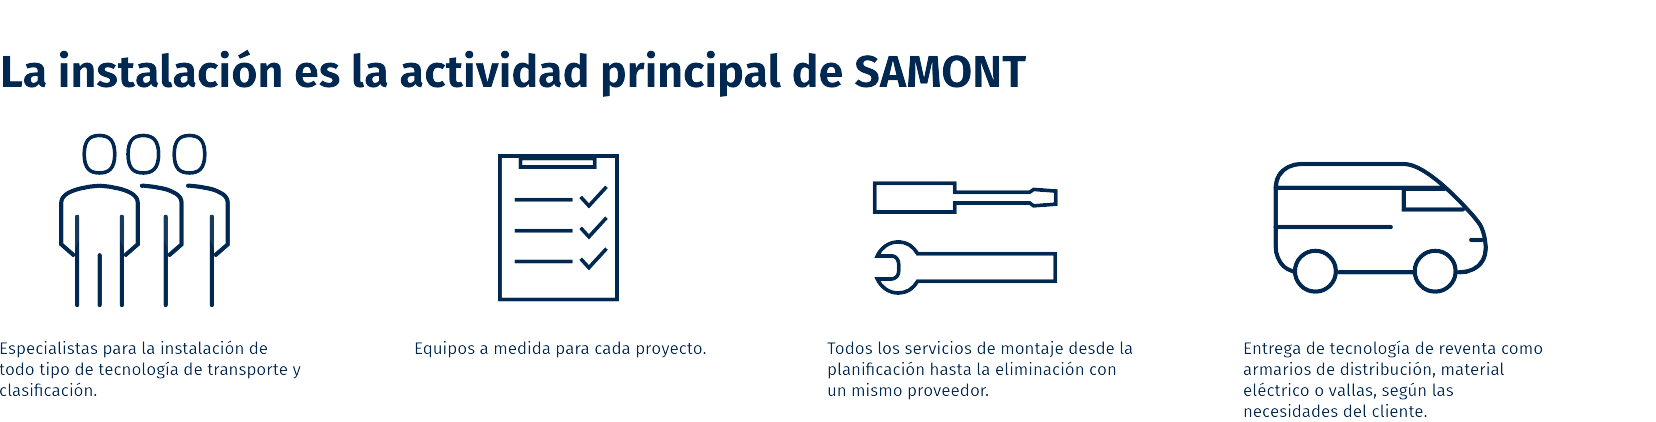 SAMONT_Installation_ES